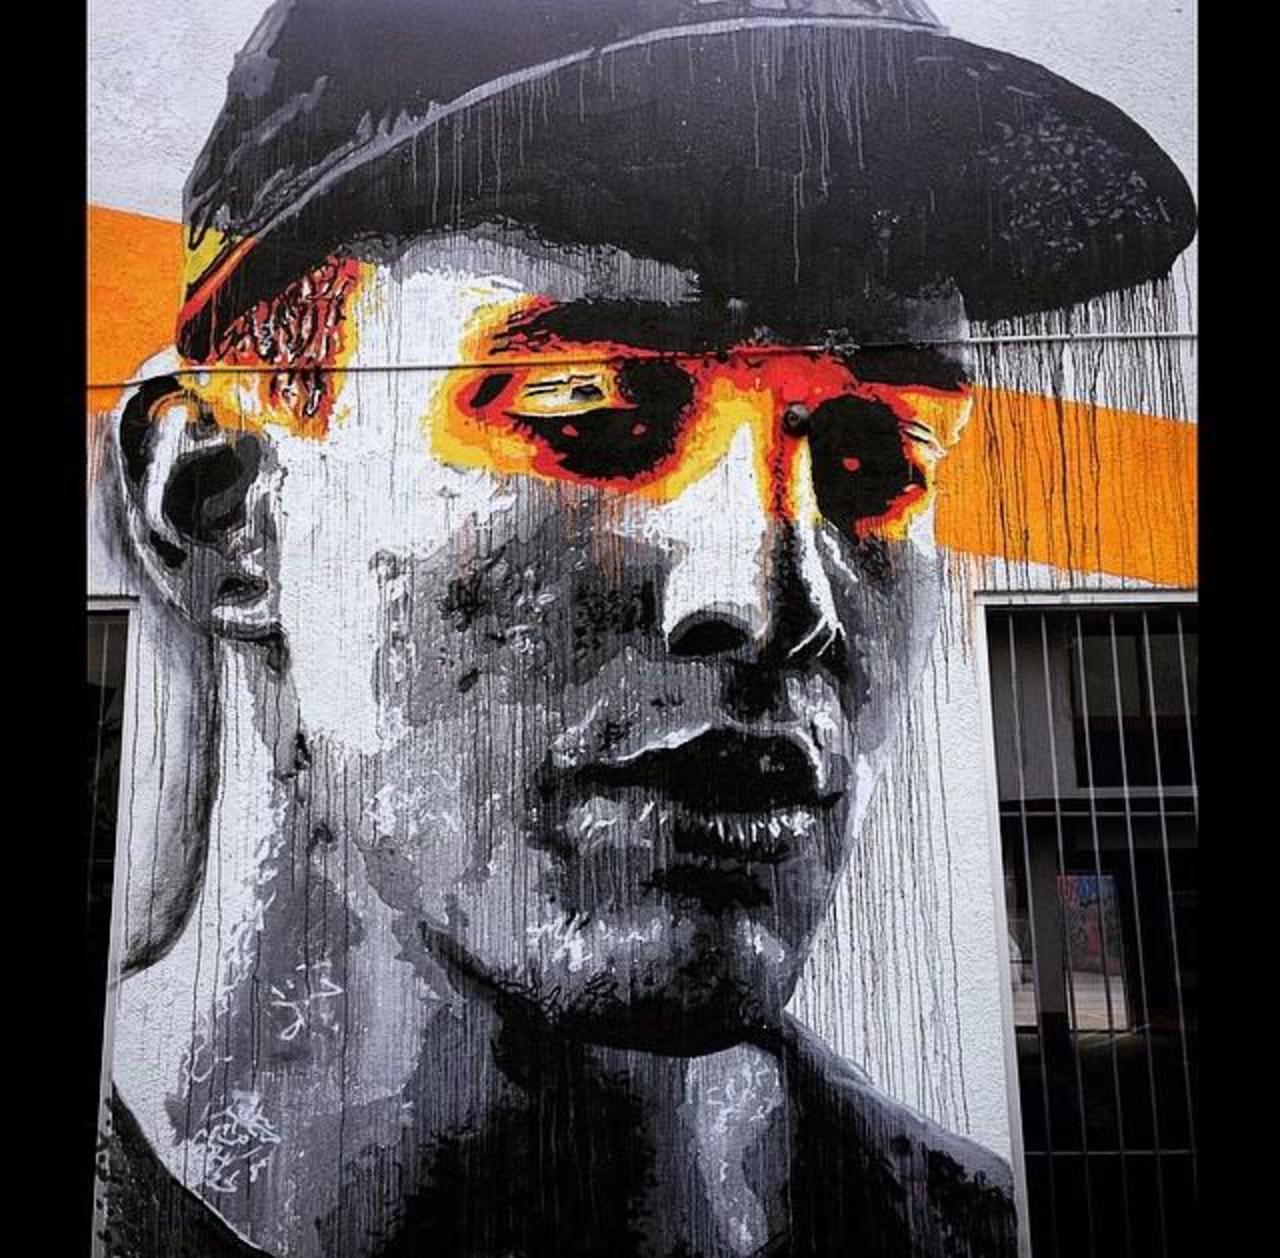 Artist Nils Westergard Street Art portrait in Miami 

#art #graffiti #mural #streetart http://t.co/TfQdkVfj7S